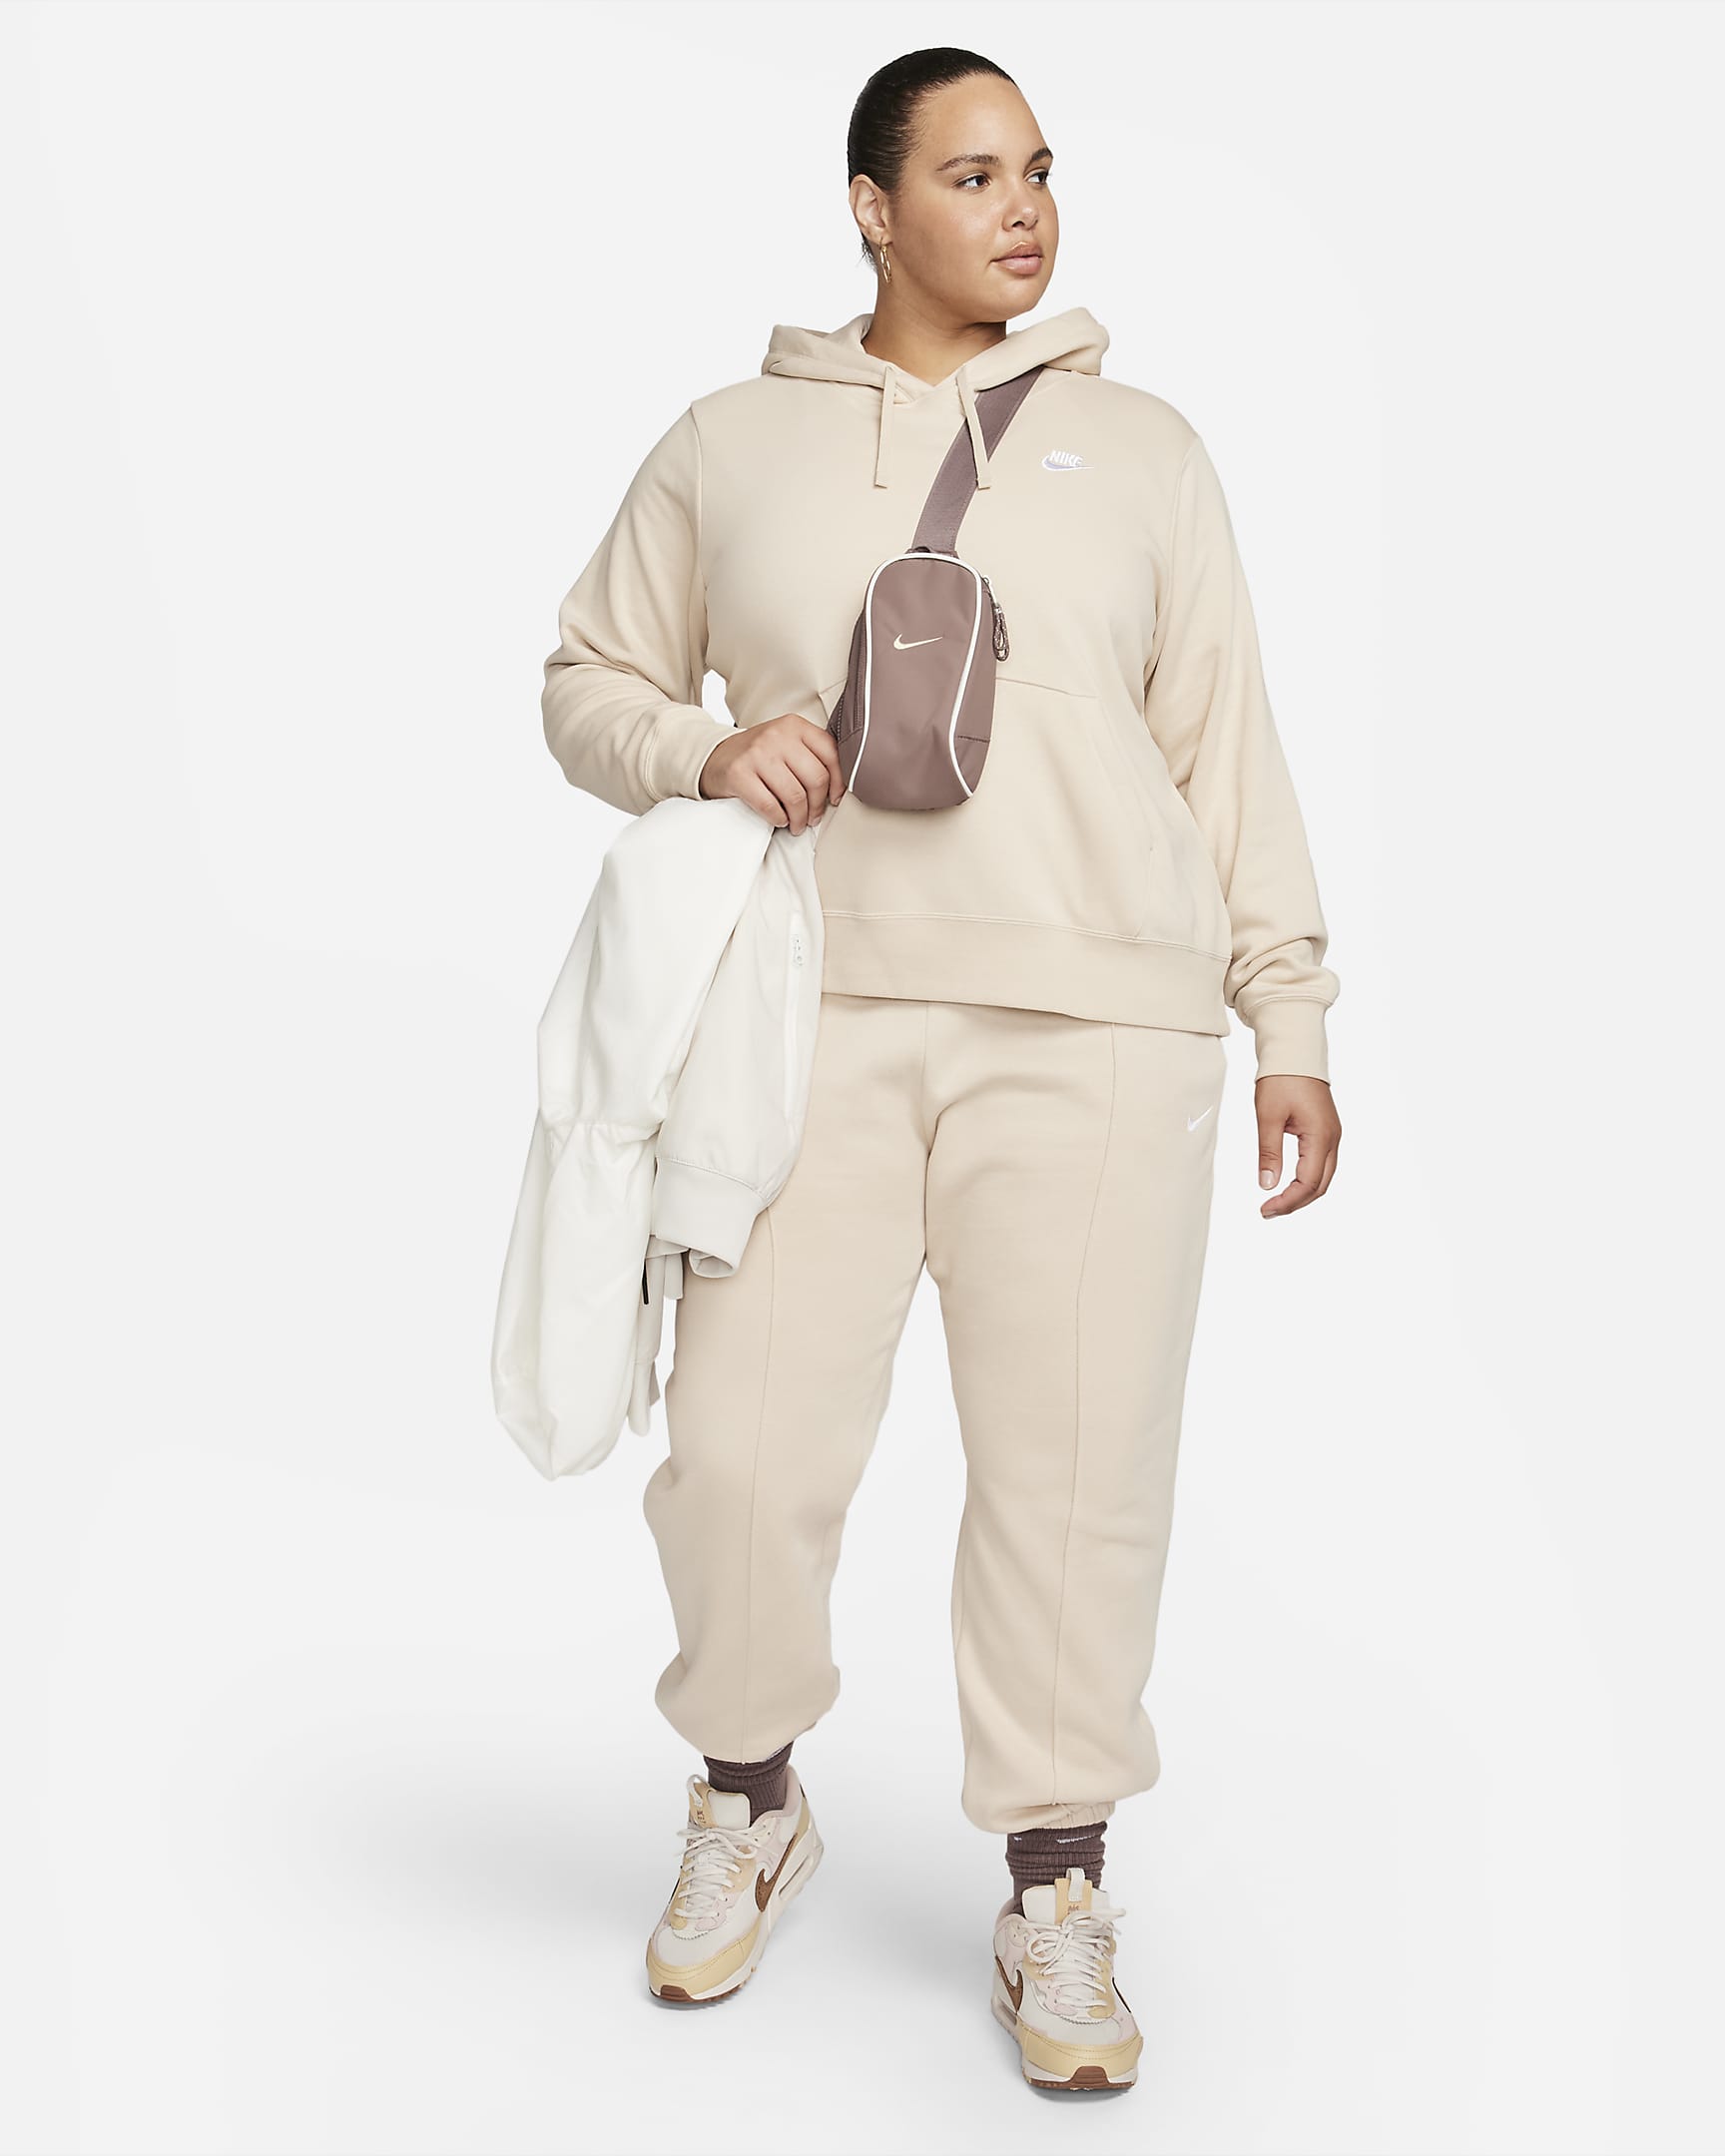 Nike Sportswear Club Fleece Women's Pullover Hoodie (Plus Size). Nike.com